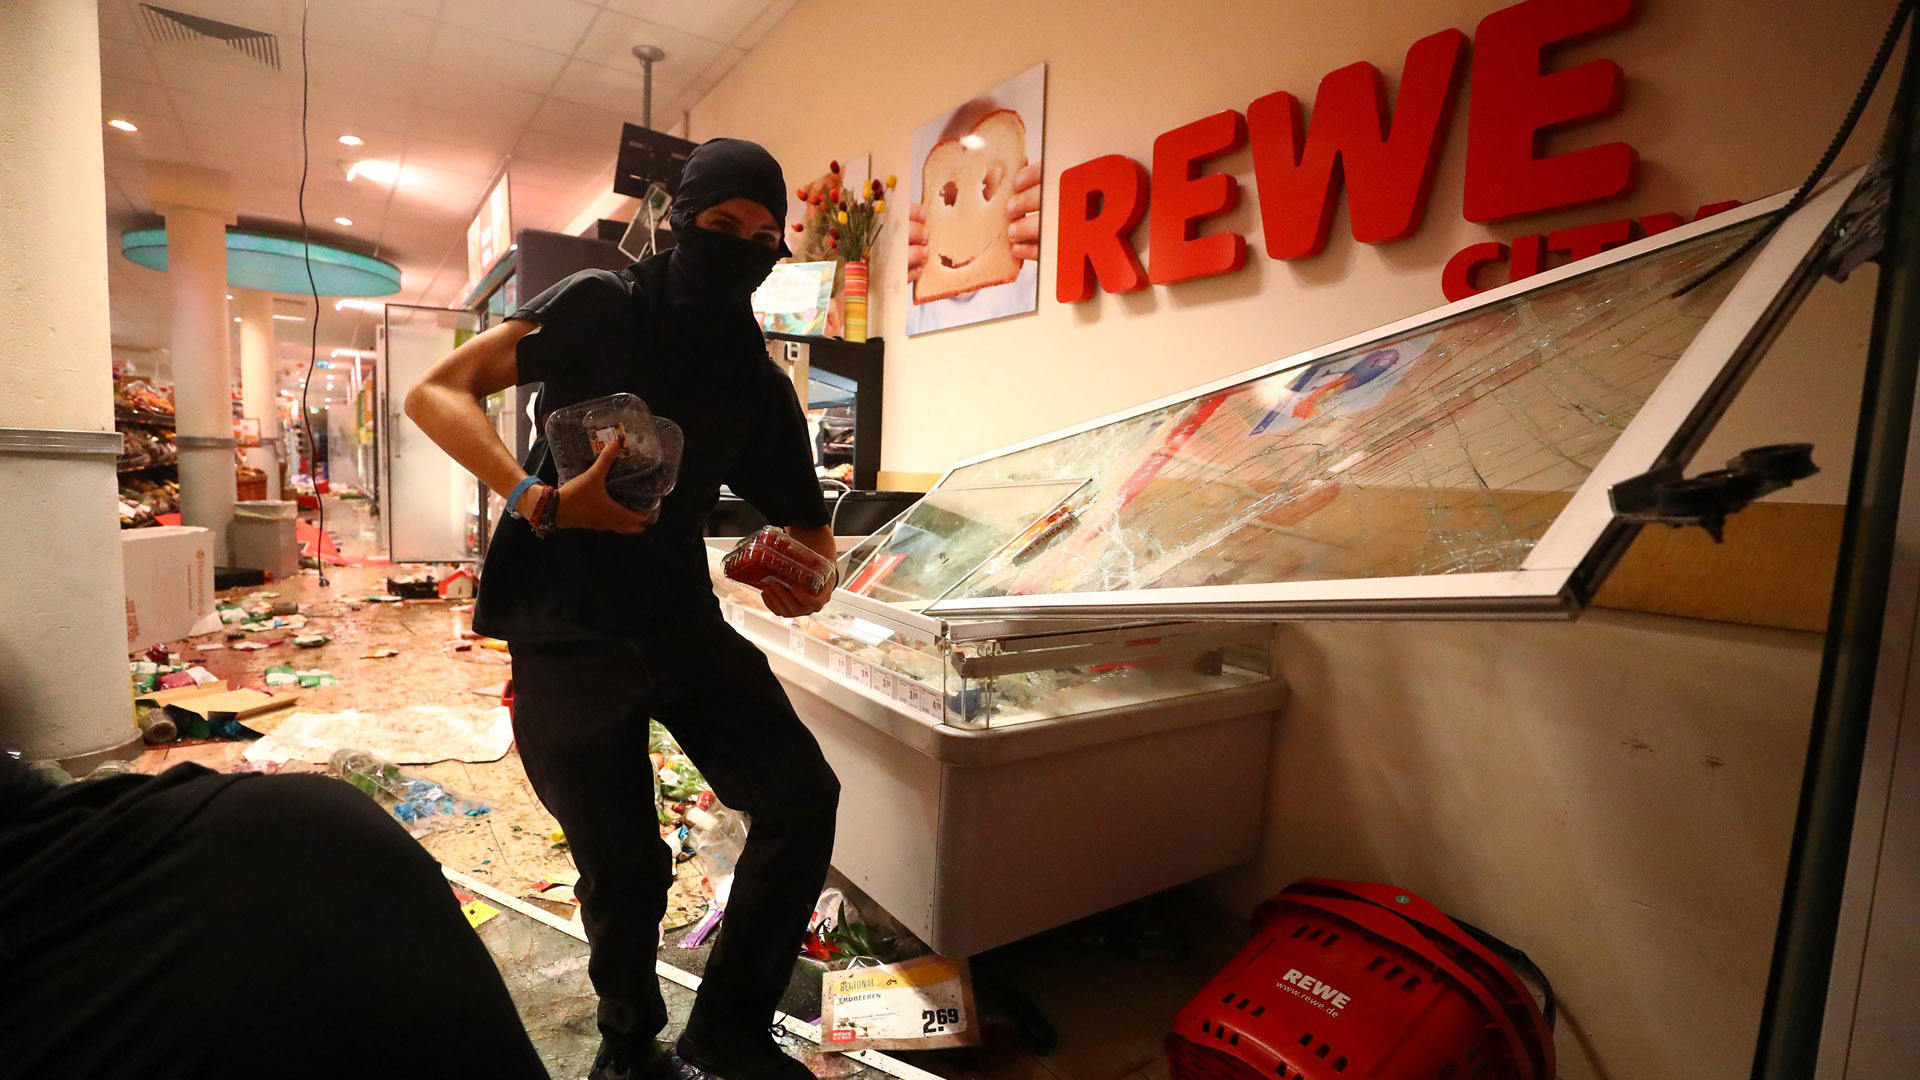 Ein Randalierer plündert einen Supermarkt in Hamburg | Bildquelle: REUTERS